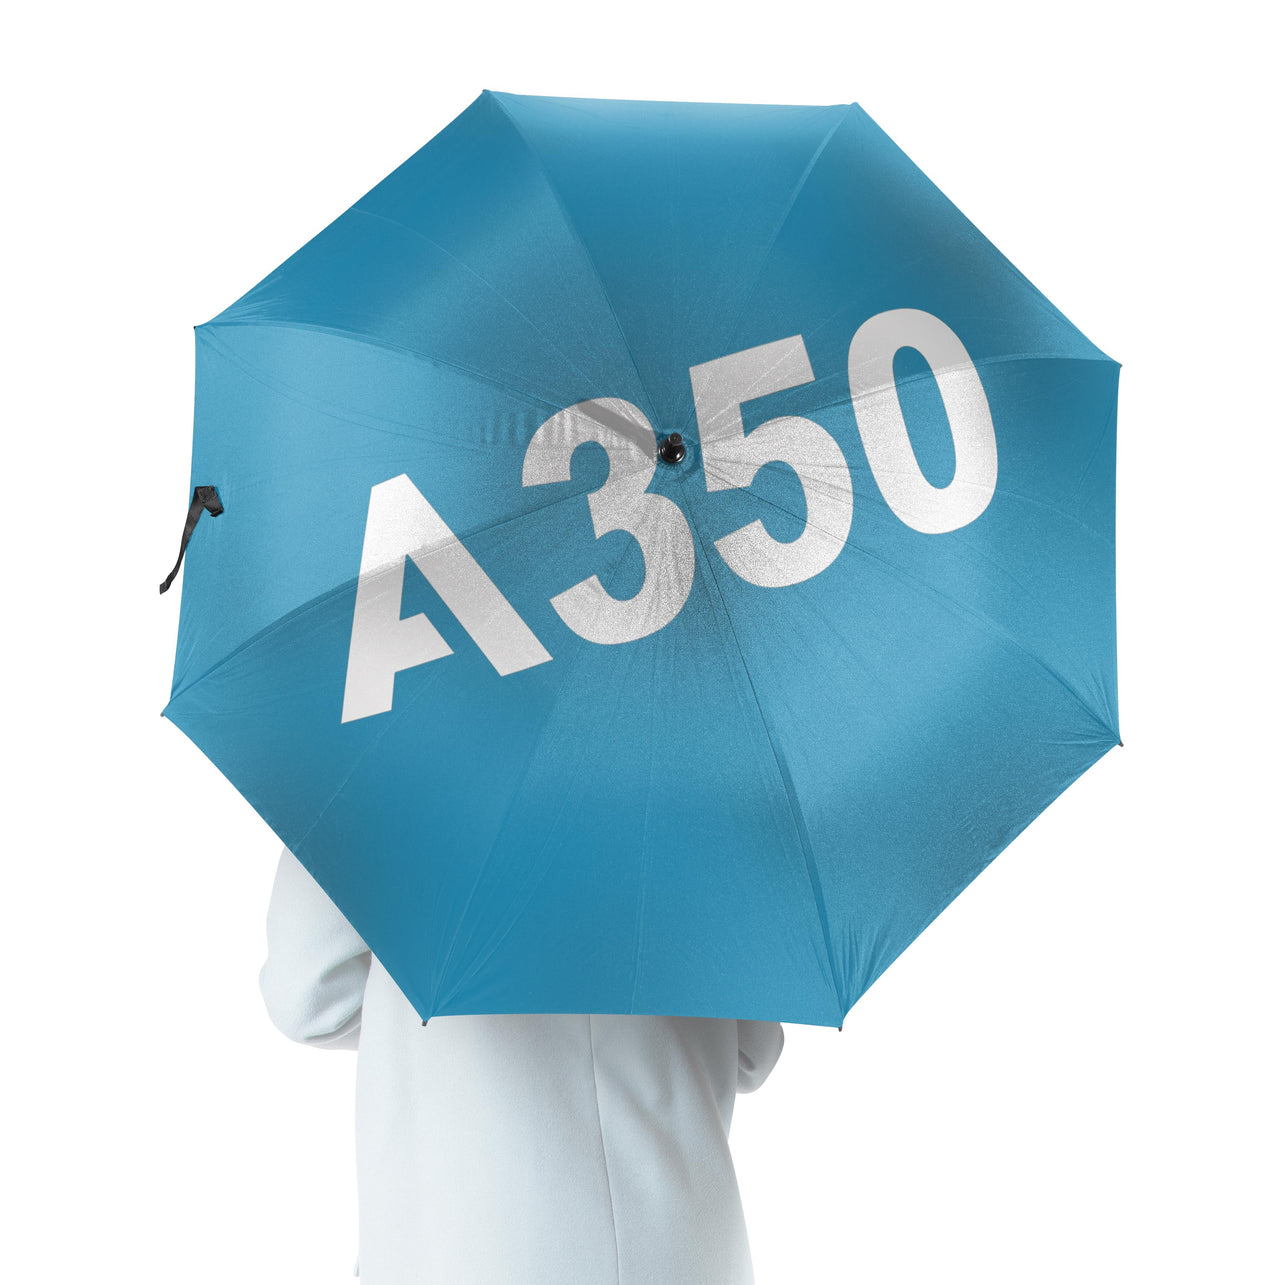 A350 Flat Text Designed Umbrella